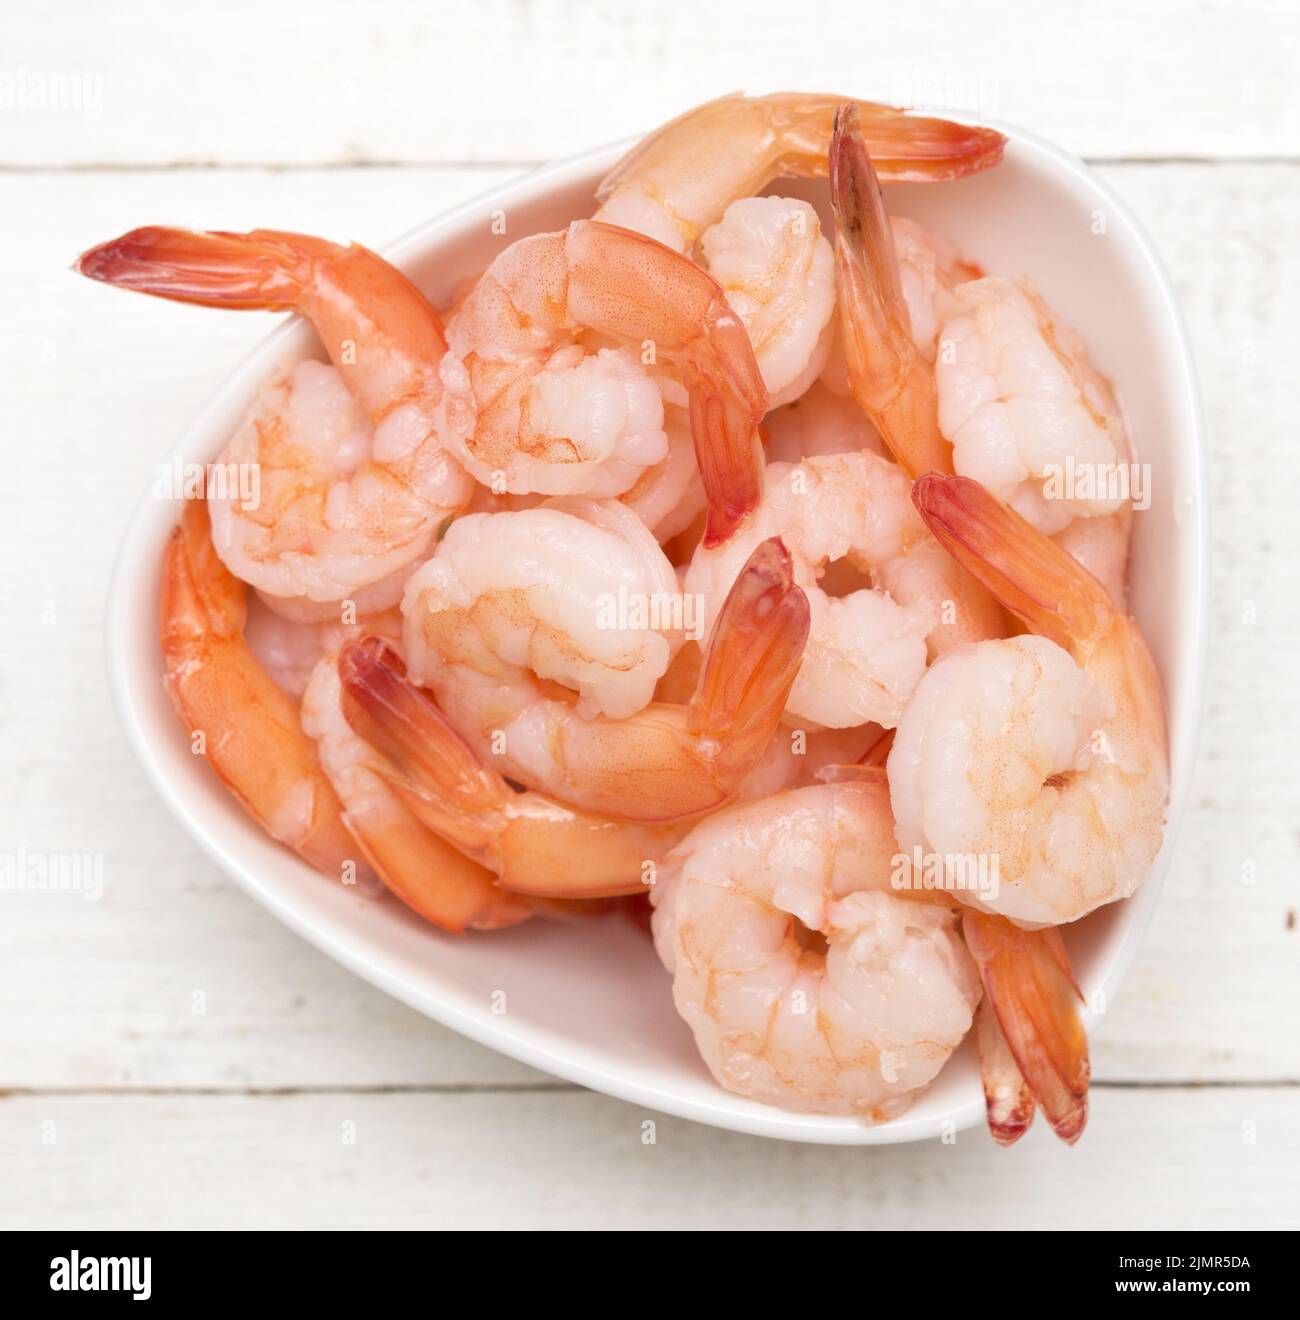 Marinated shrimps Stock Photo